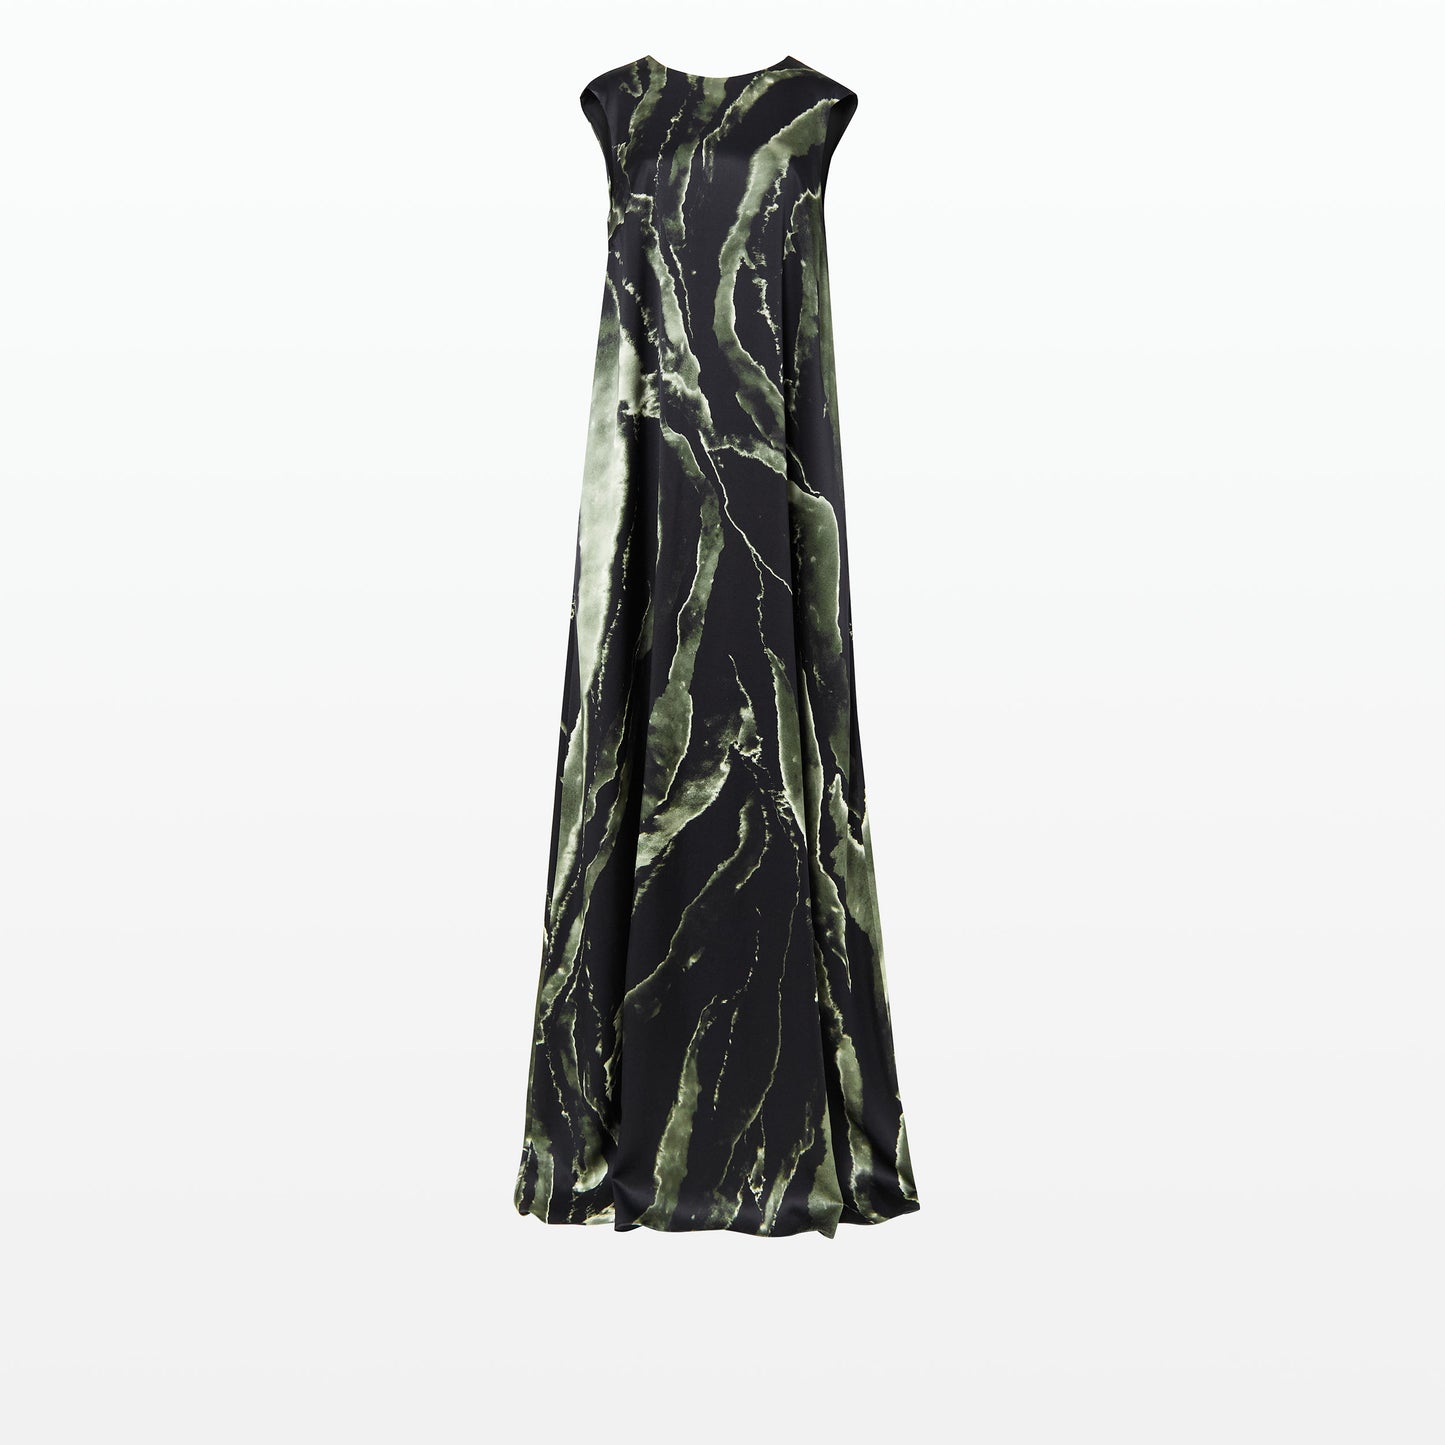 Carrara Black Marble Print Long Dress